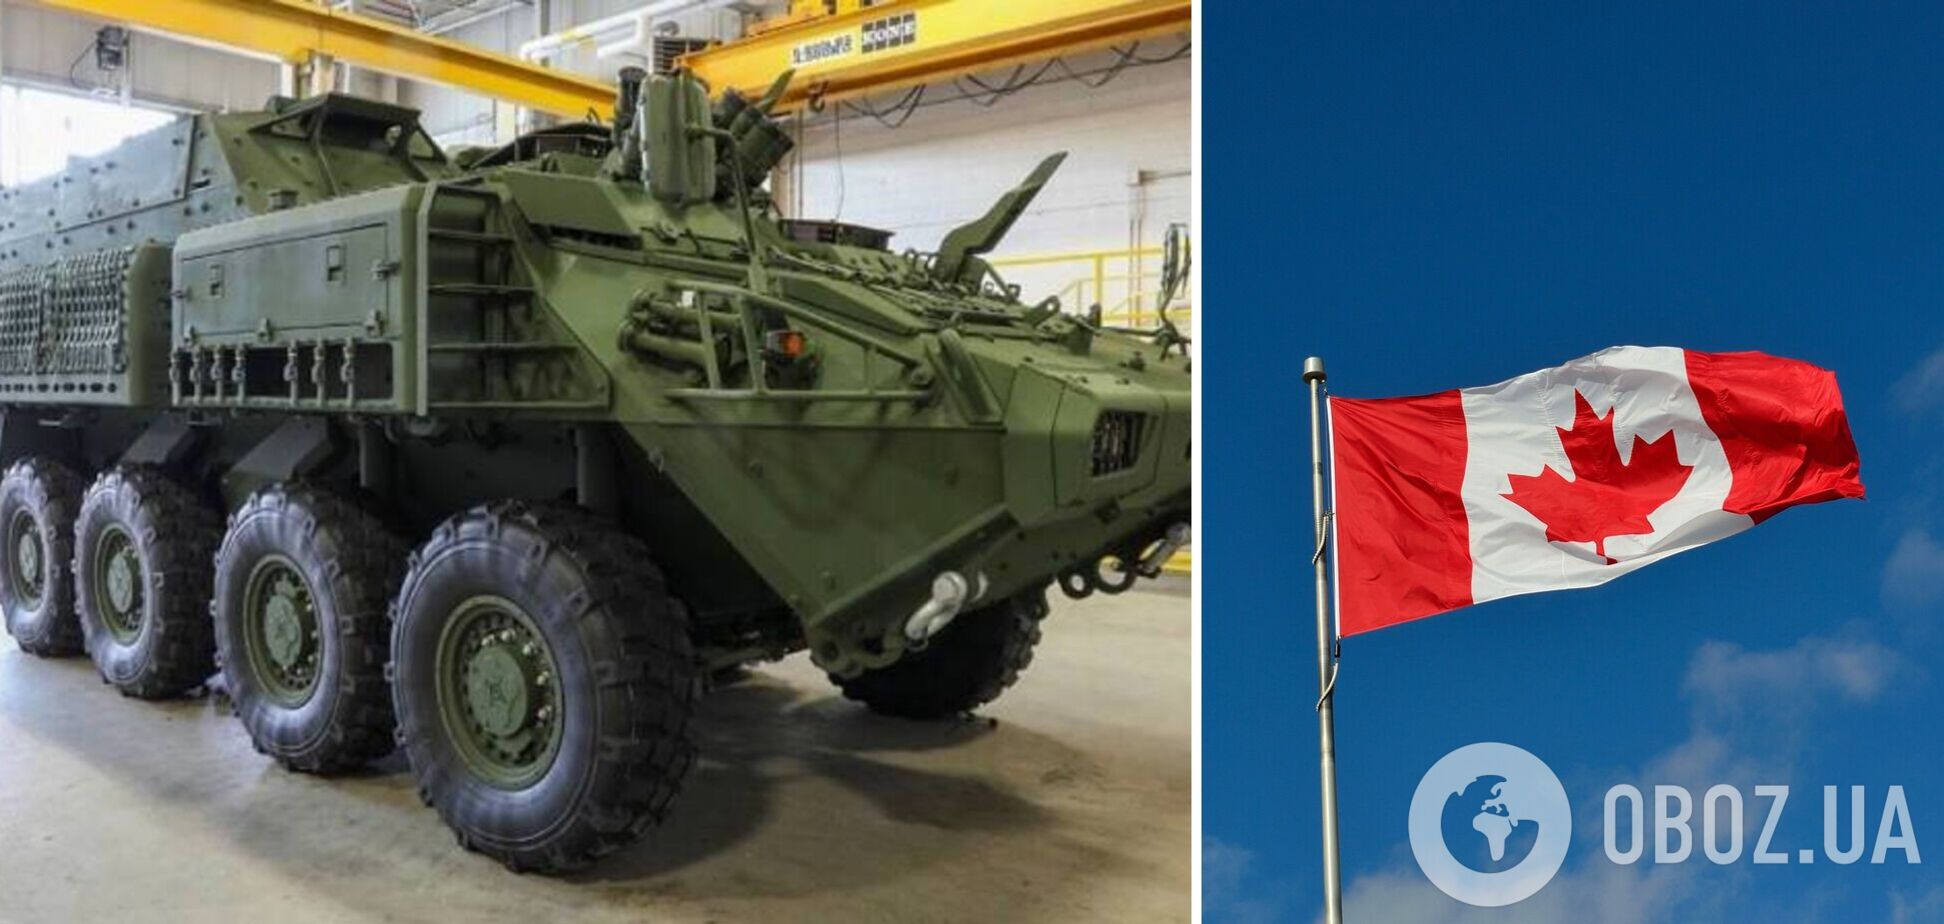 Канада отправила 39 боевых бронированных машин ACSV для Украины. Фото